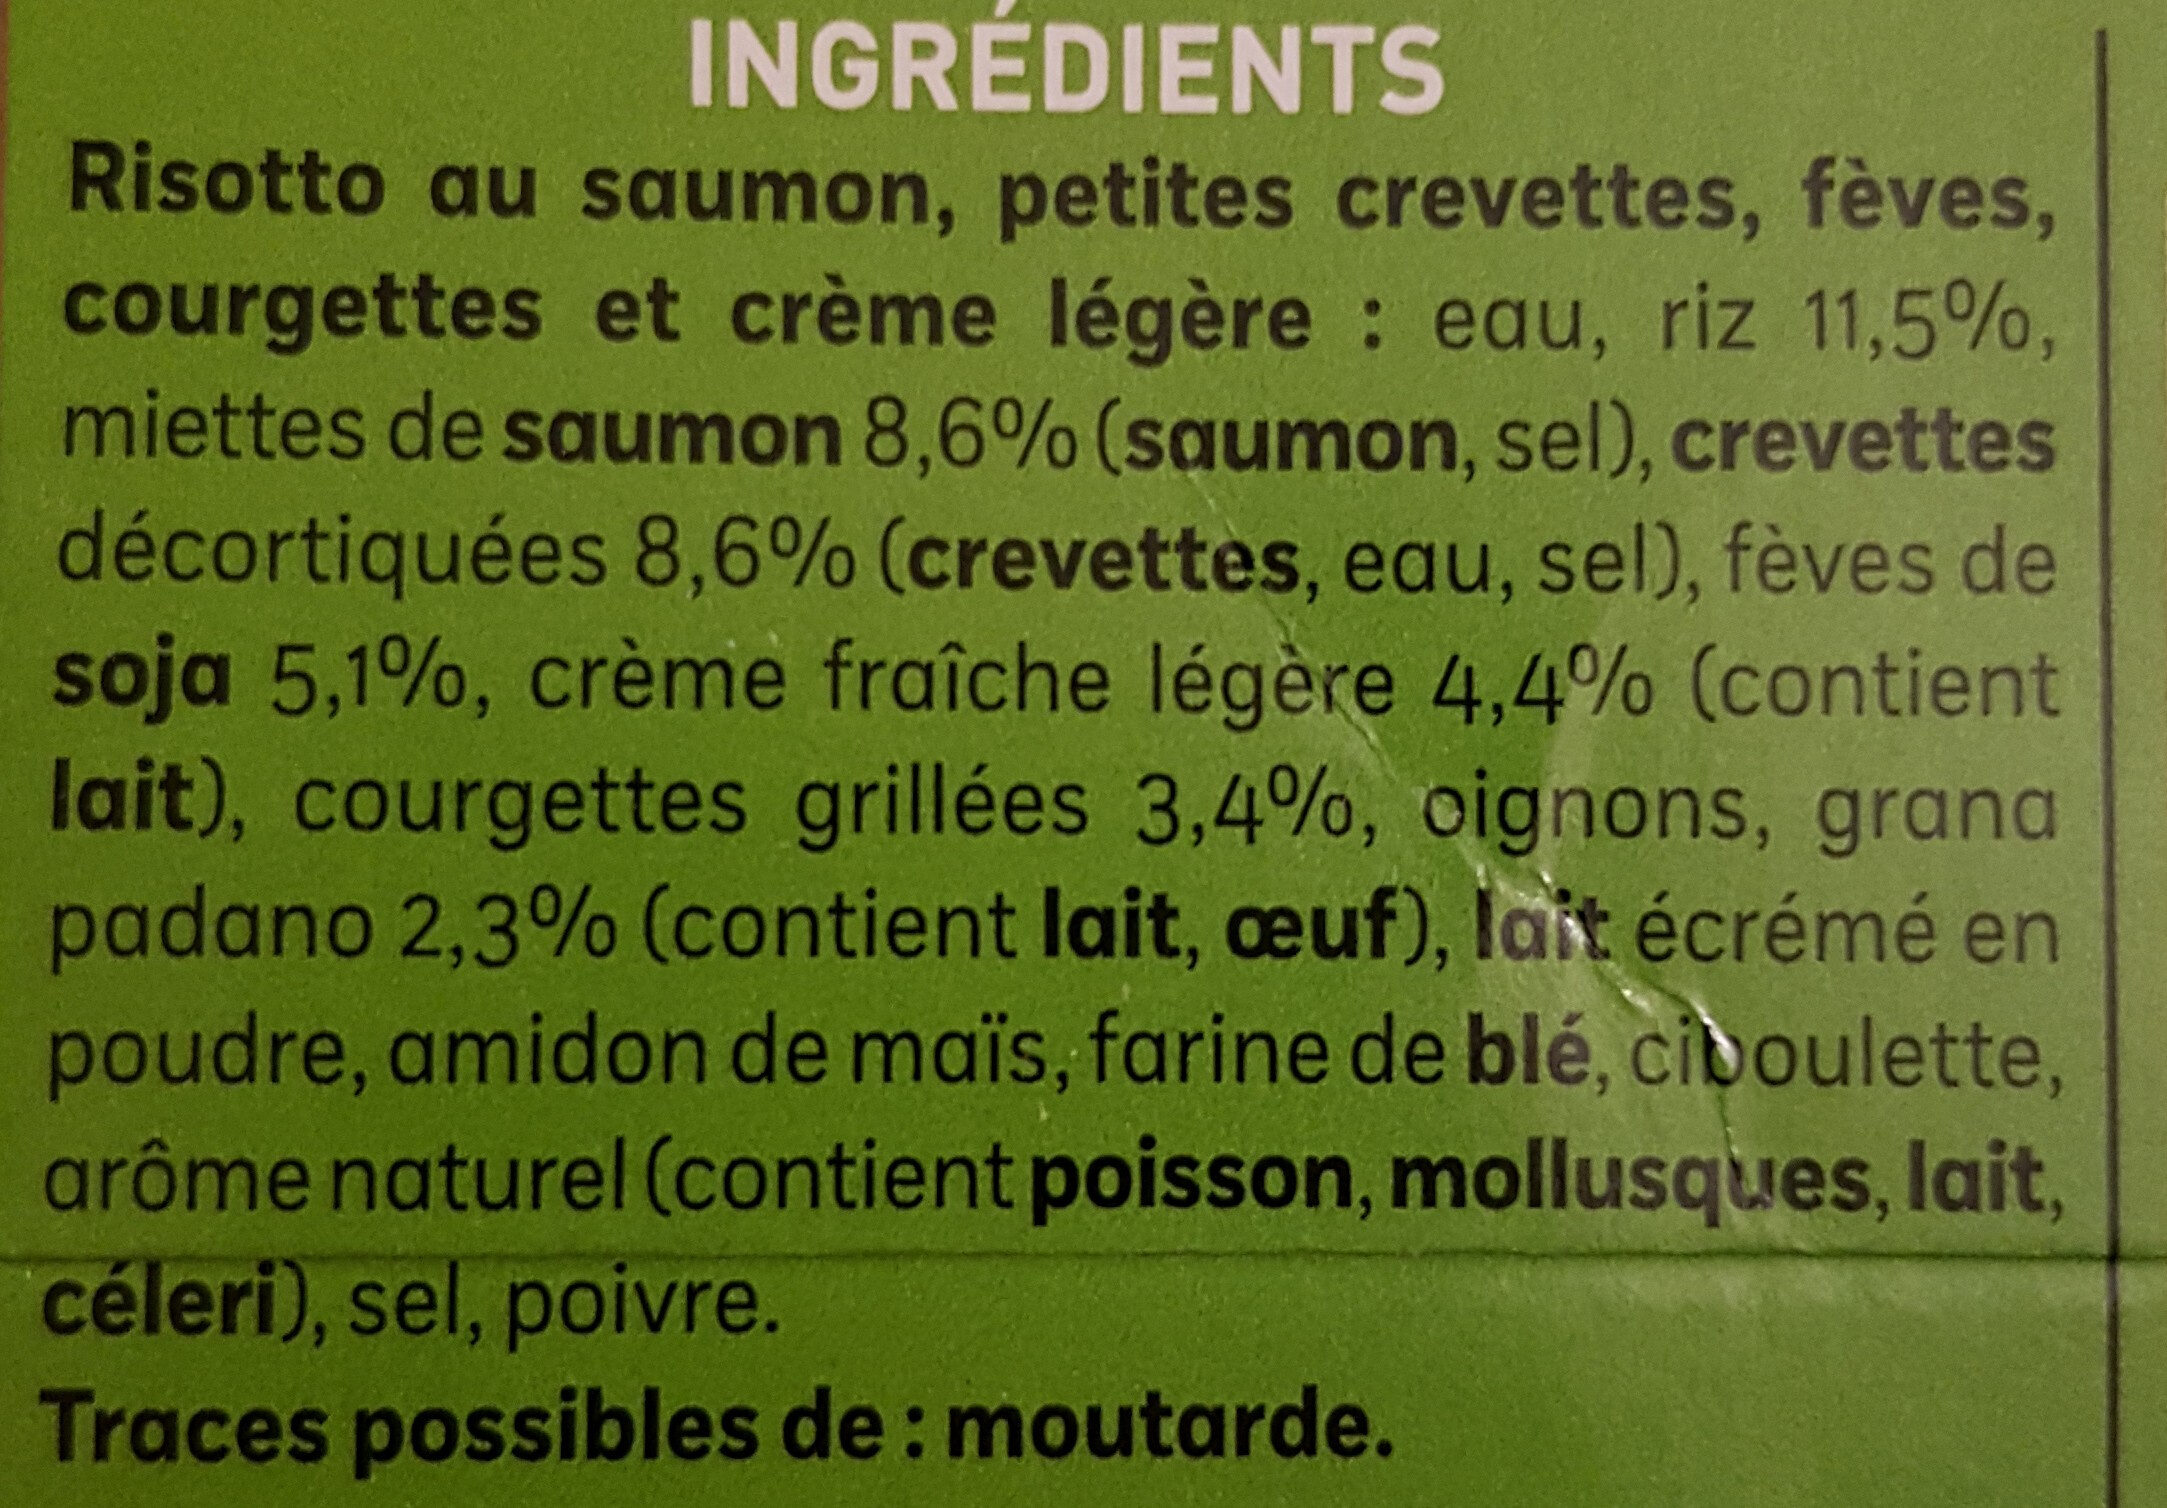 Risotto au Saumon, petites crevettes, Fèves, Courgettes - Ingredients - fr